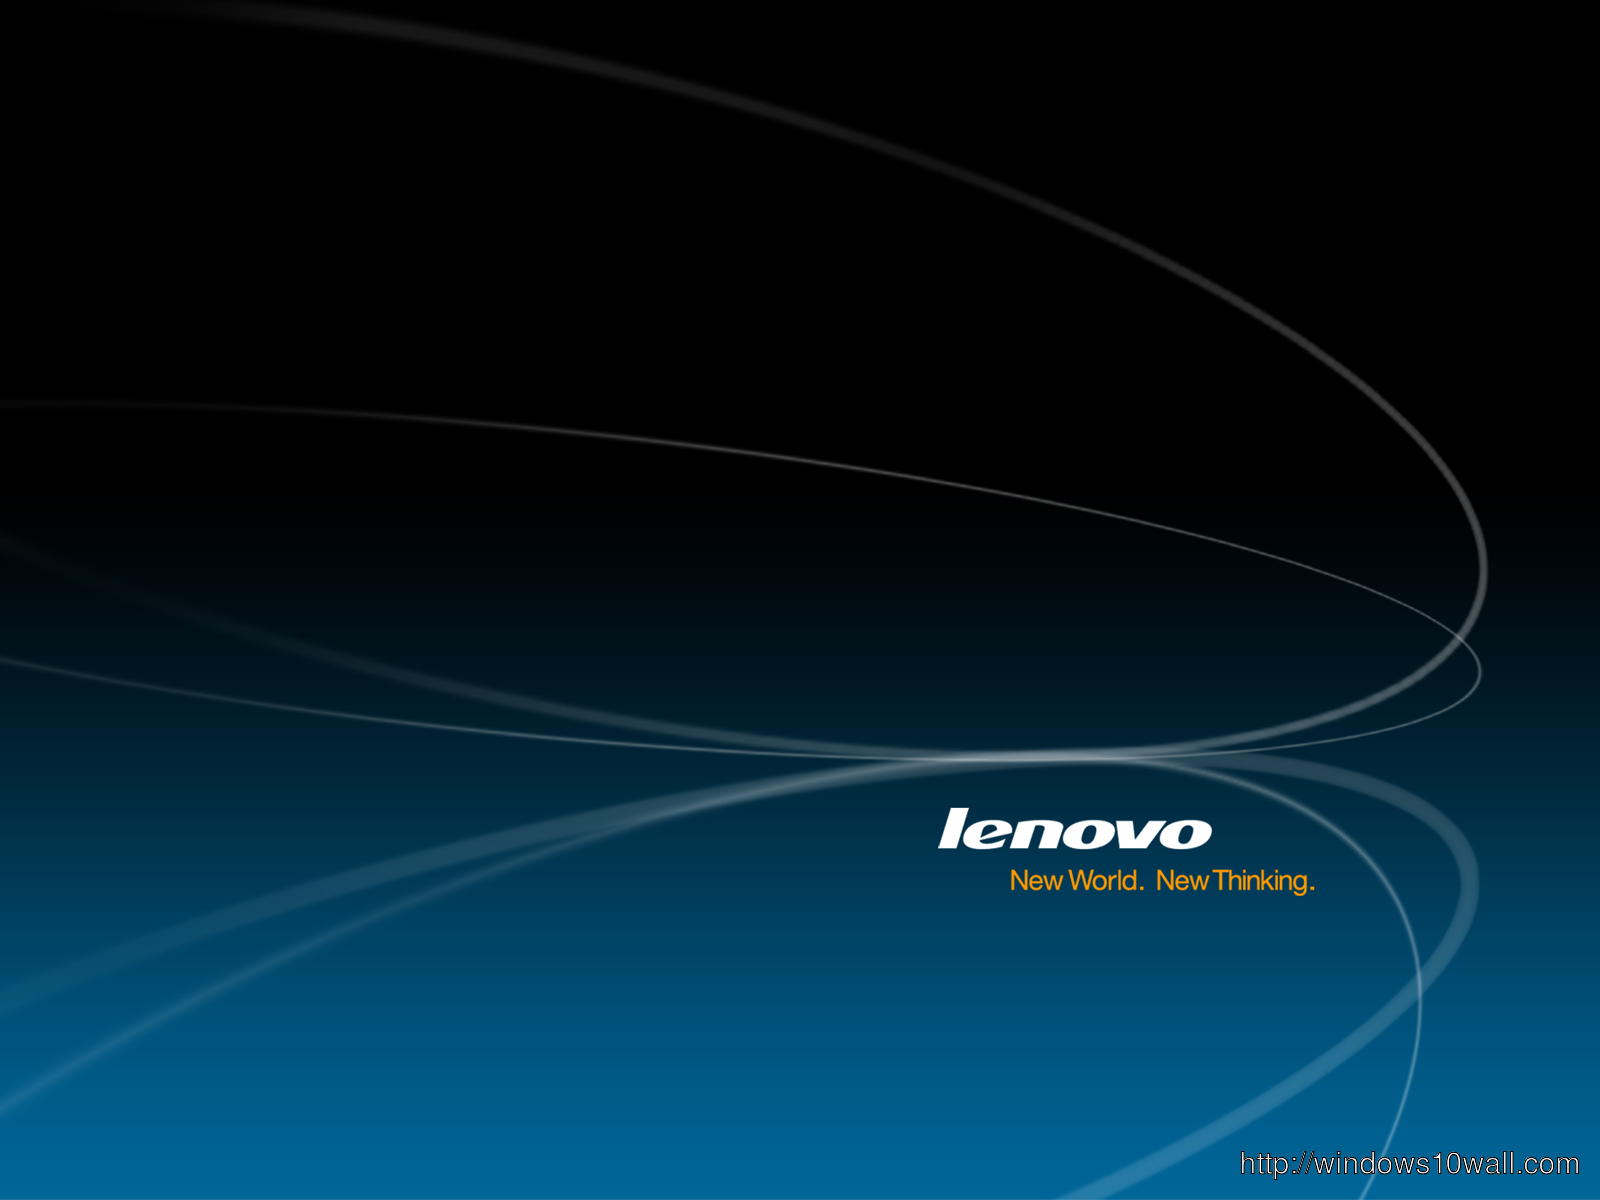 Lenovo Hi Resolution Dark Blue Black Wallpaper